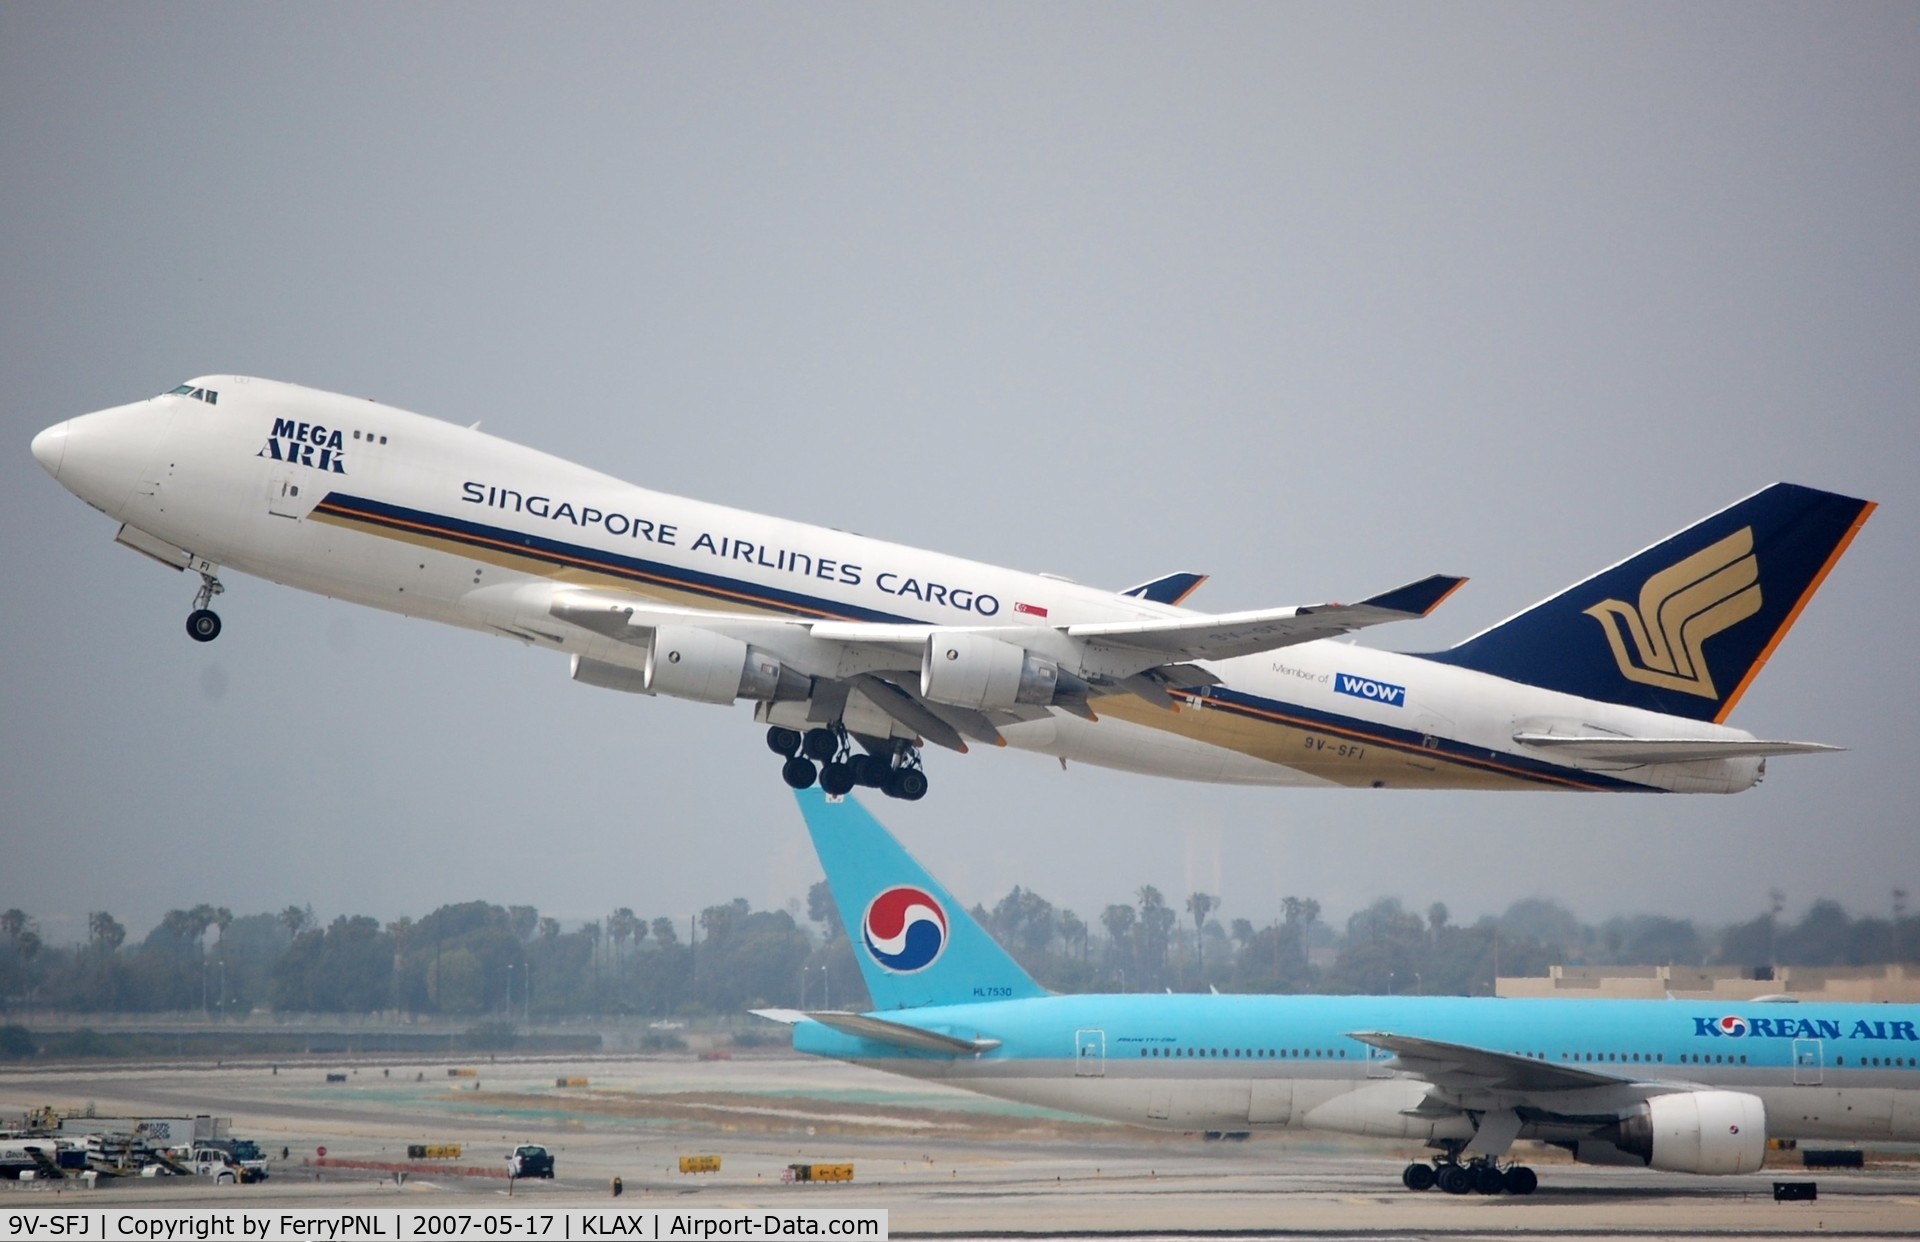 9V-SFJ, 2001 Boeing 747-412F/SCD C/N 26559, Departing LAX